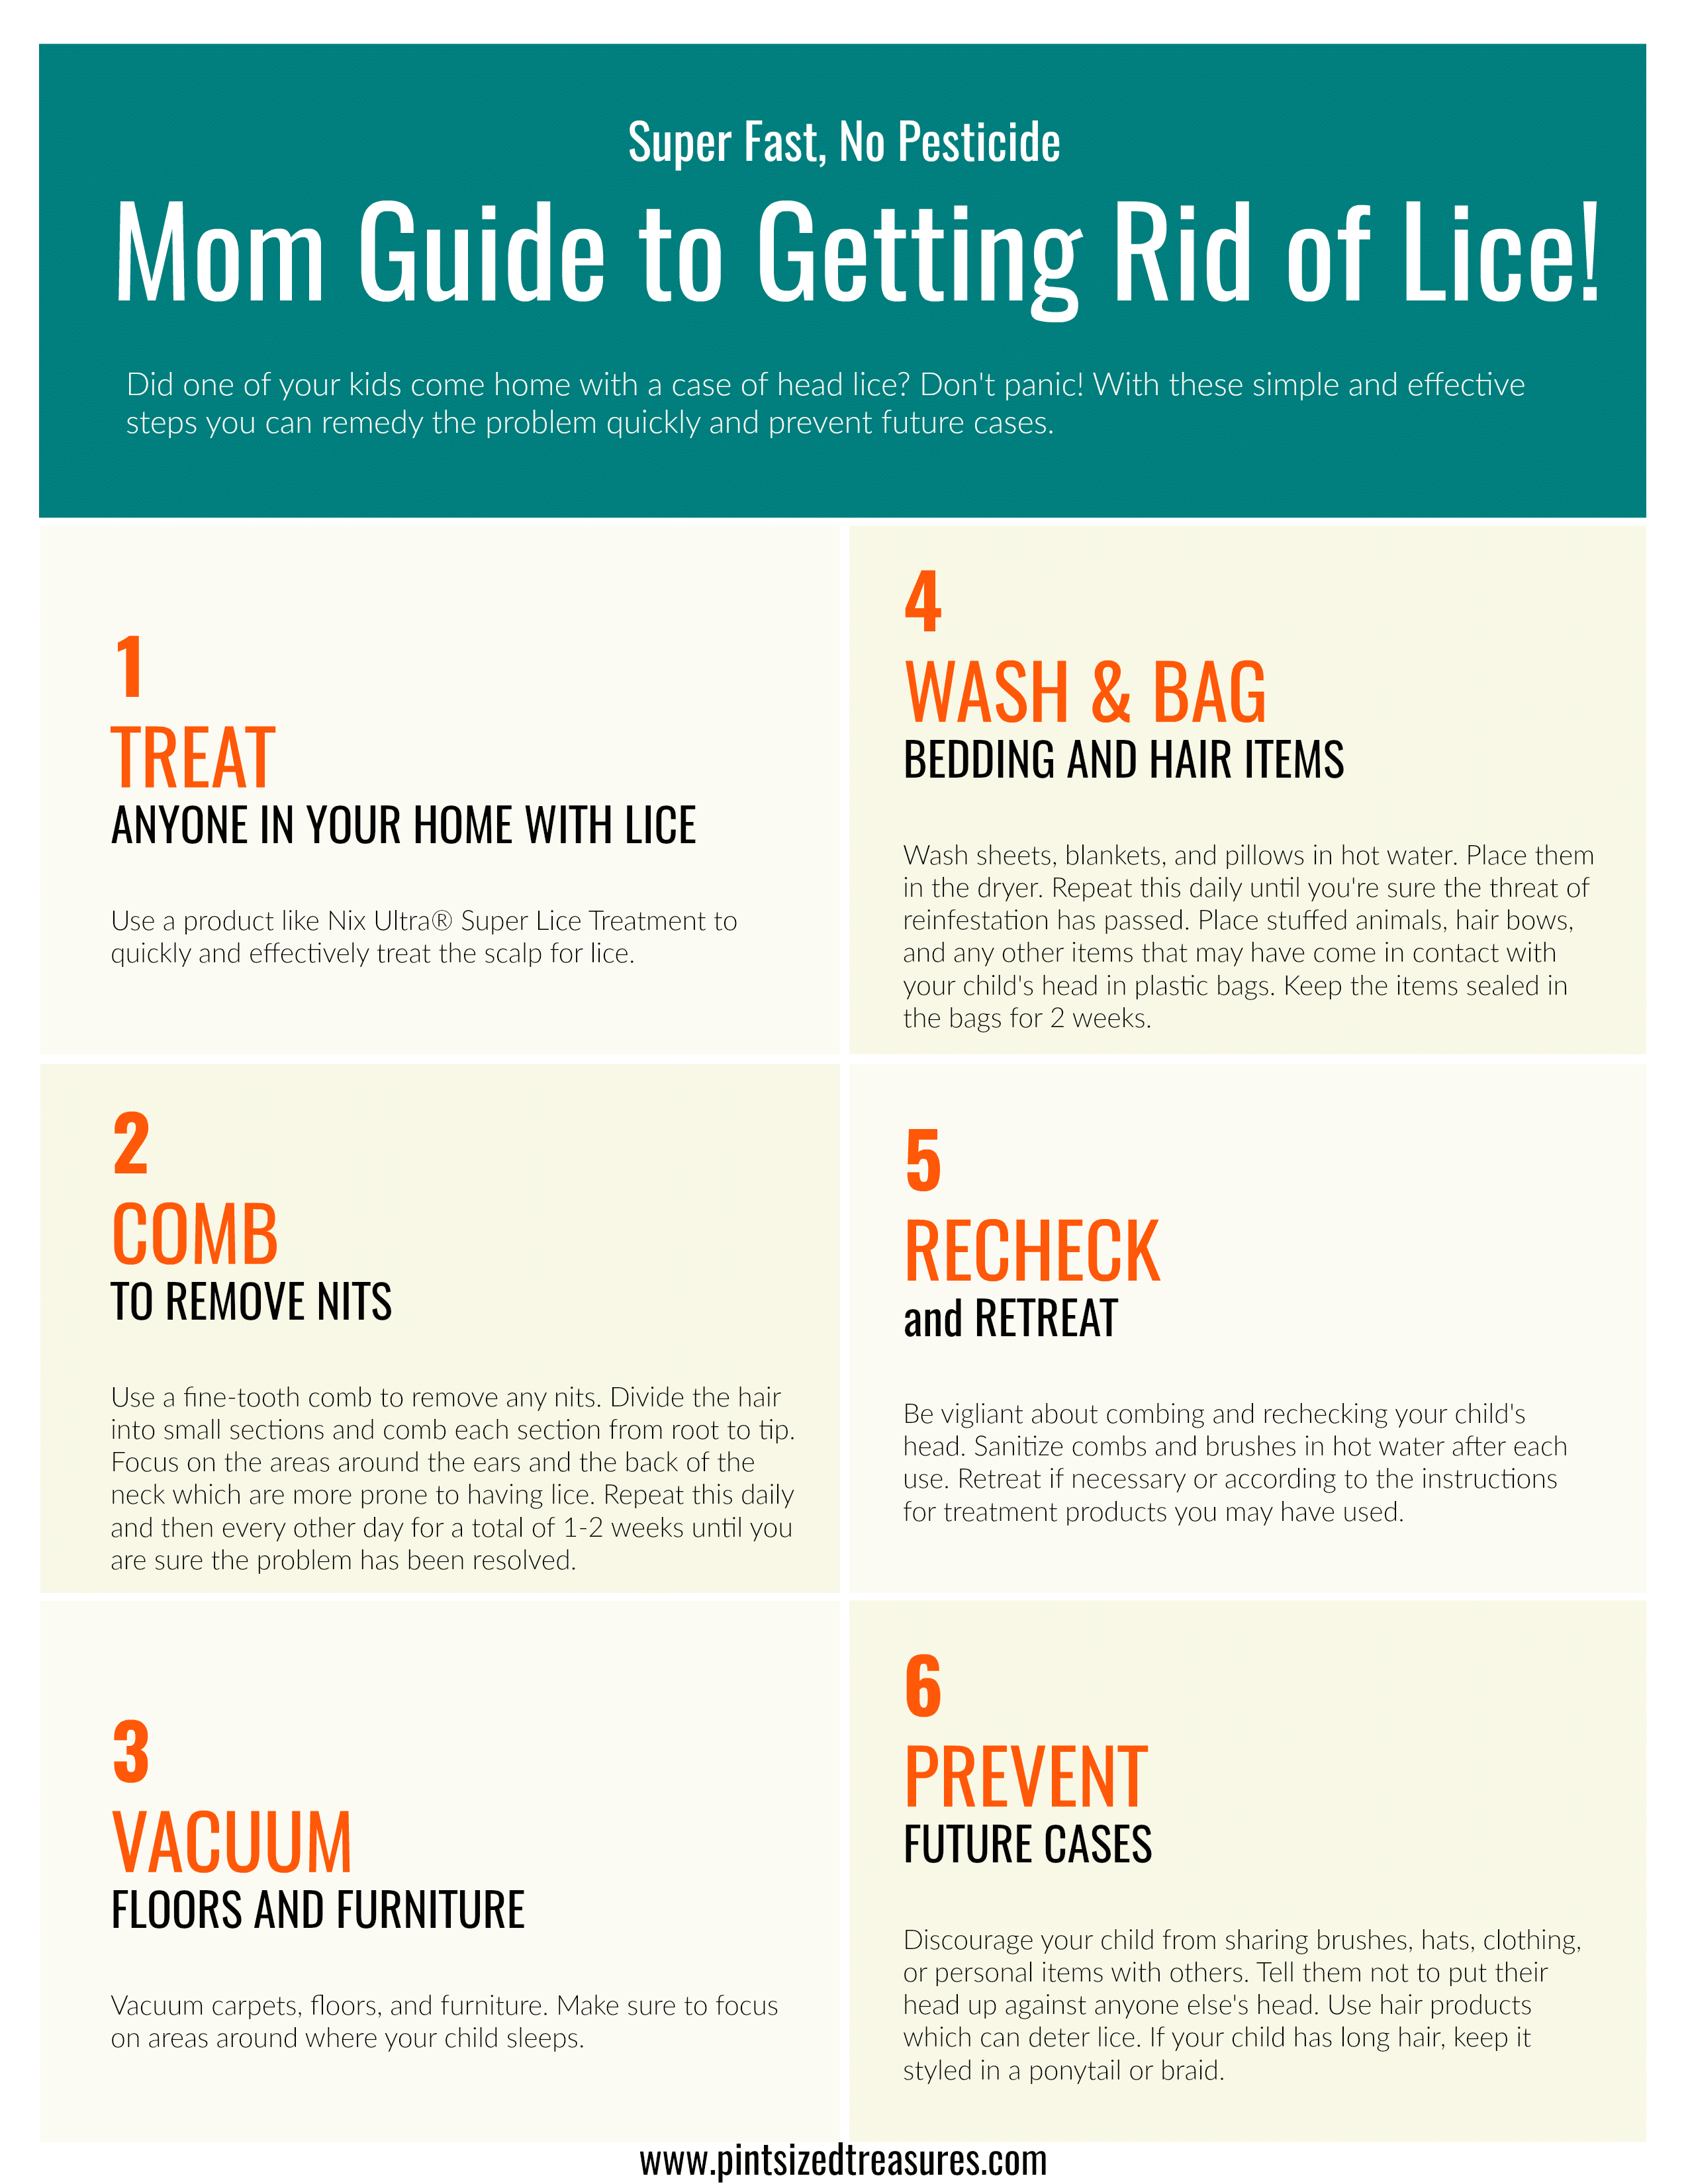 lice guide